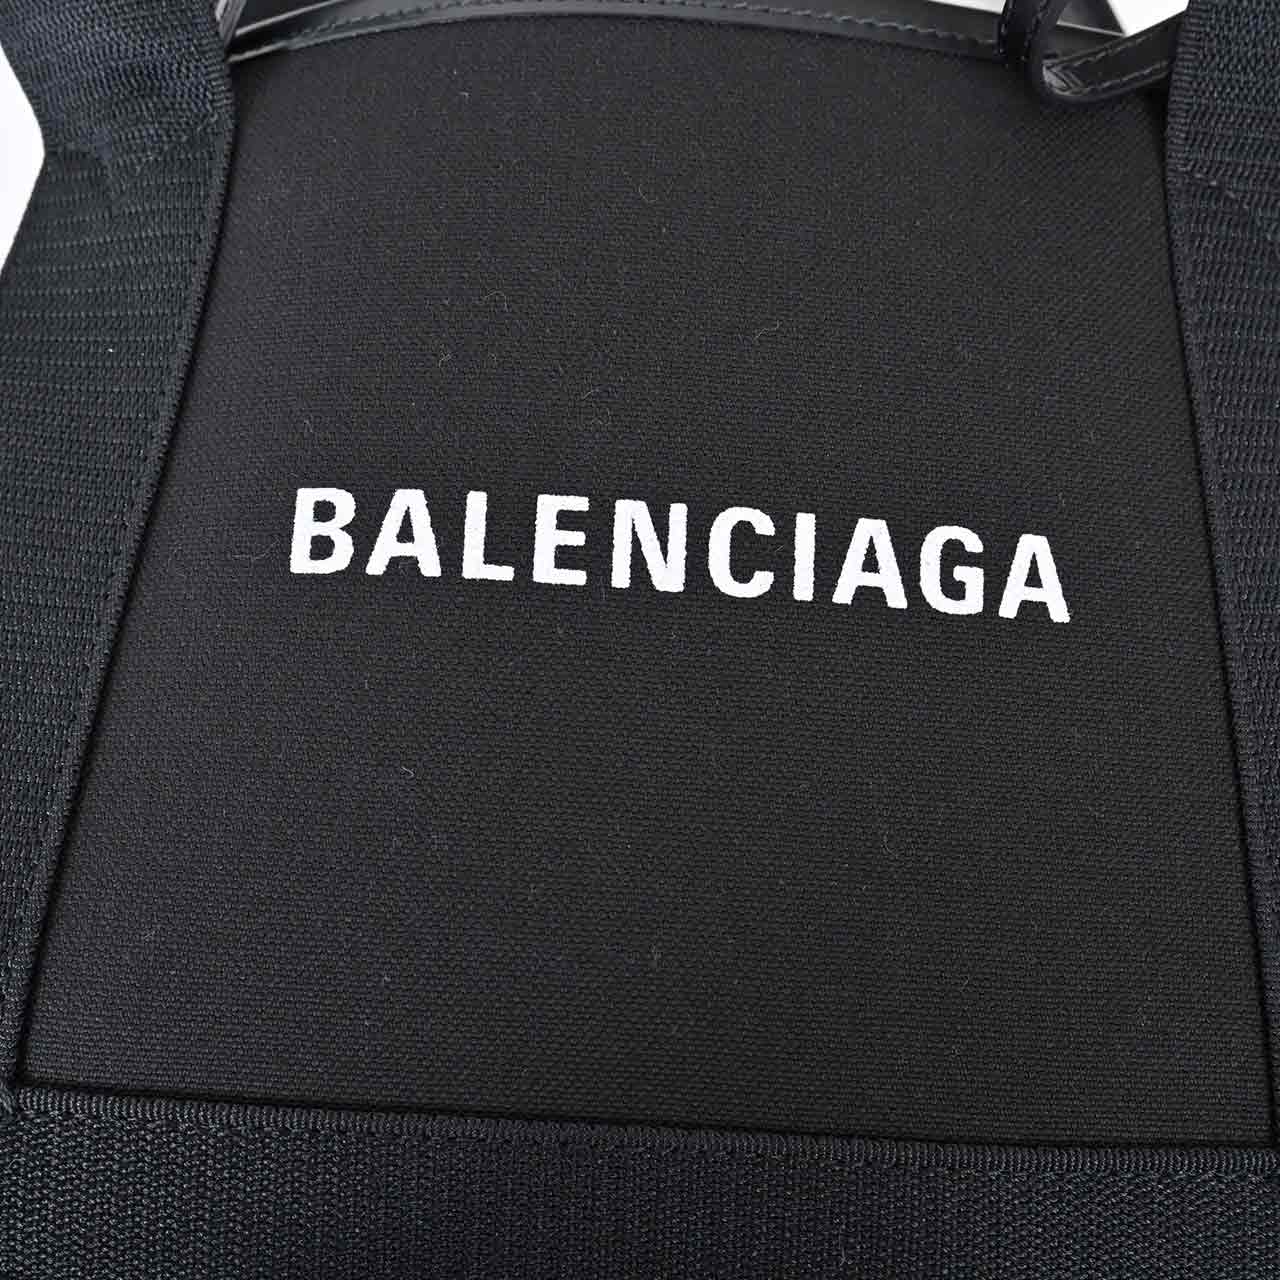 バレンシアガ BALENCIAGA バッグ 390346 1000 ブラック  メンズ